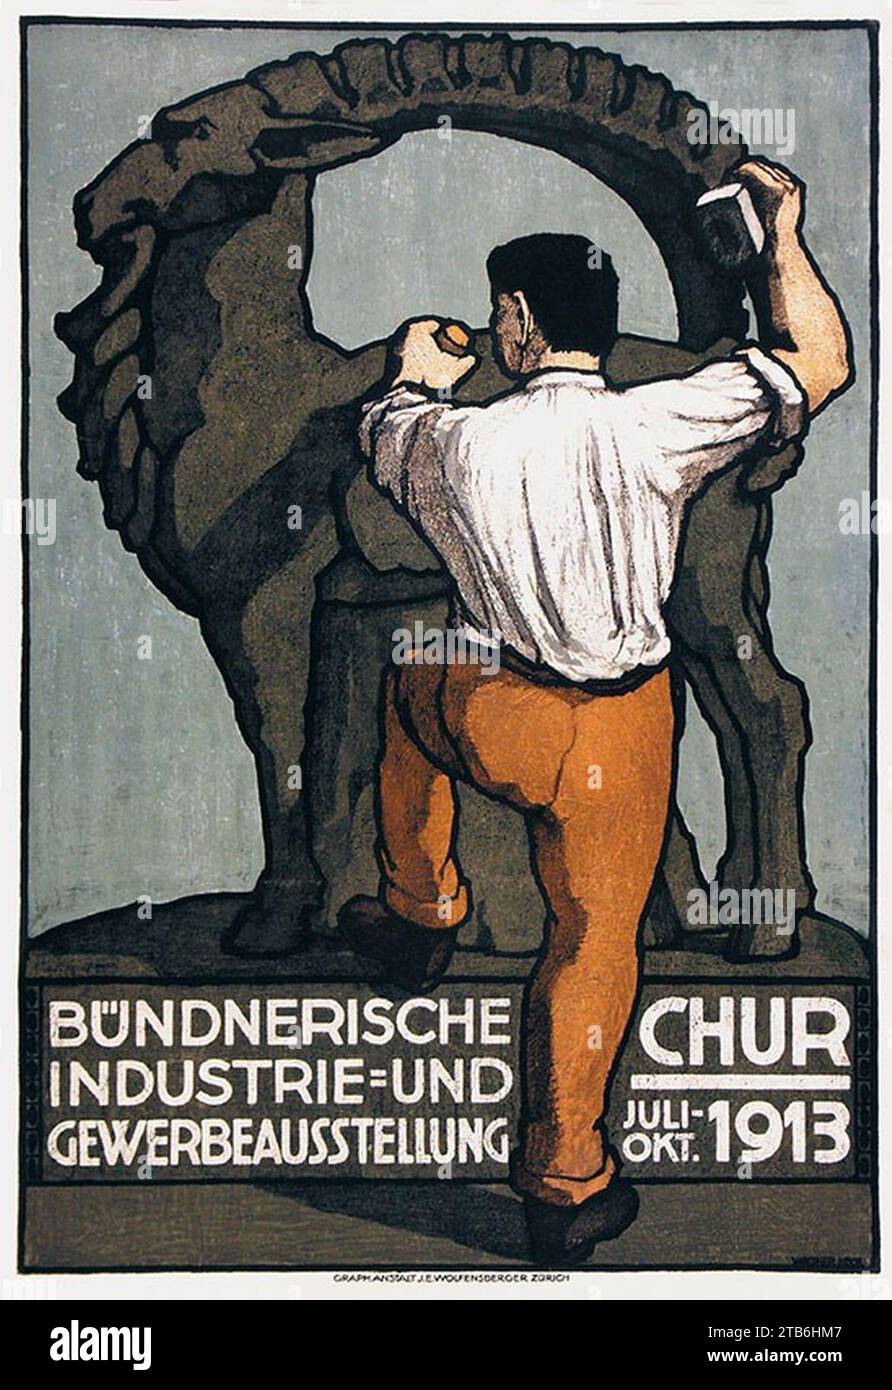 Walther Koch - Bündnerische Industrie- und Gewerbeausstellung 1913. Stock Photo